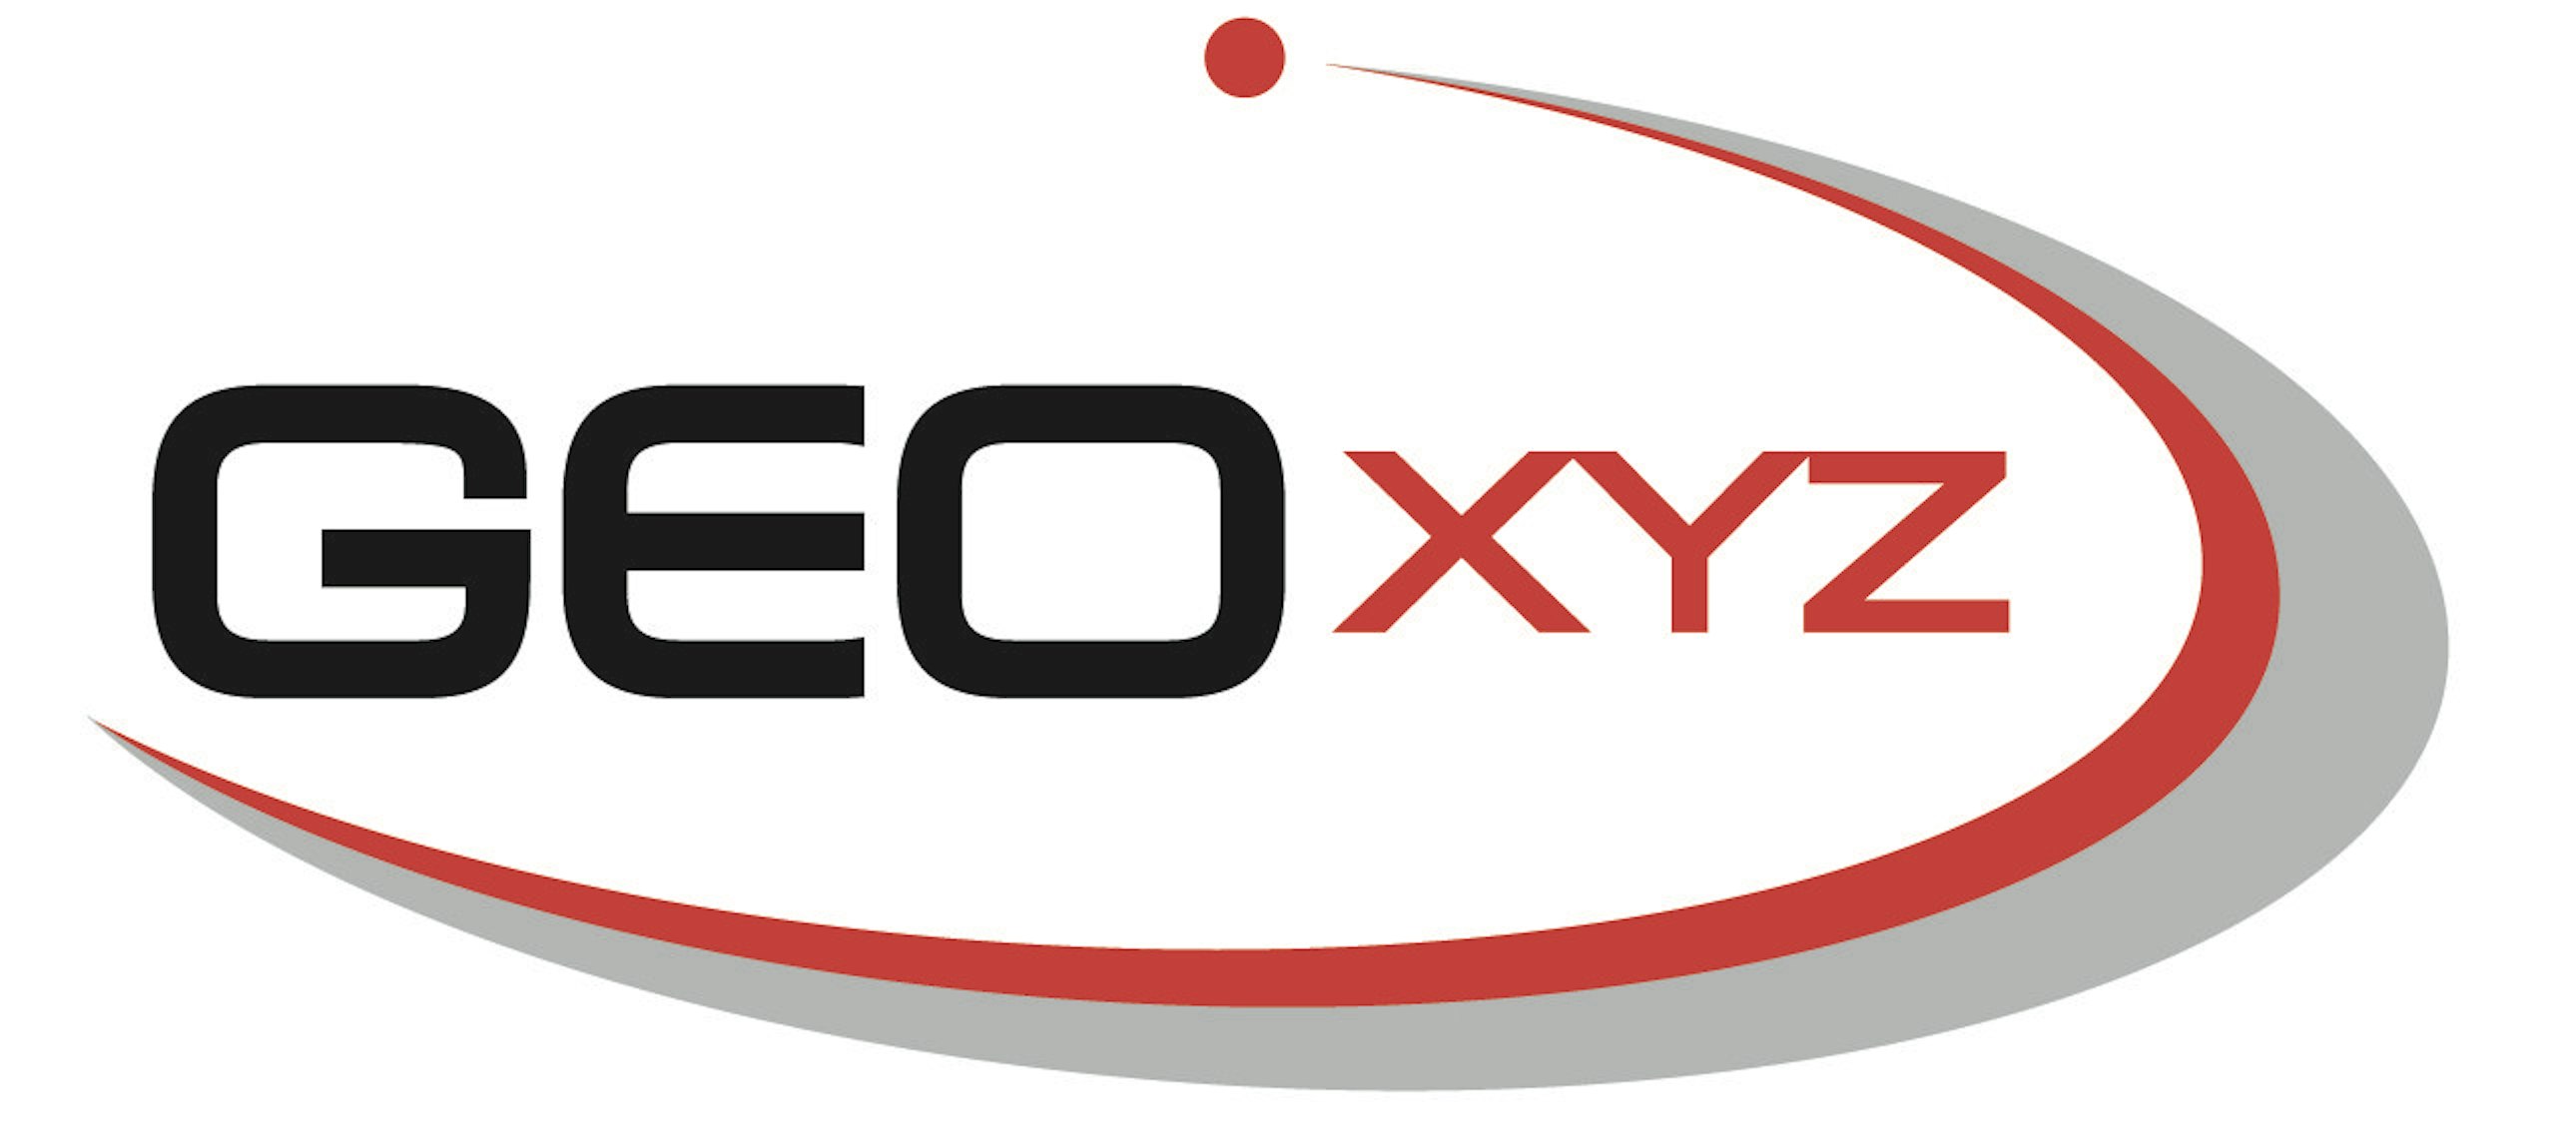 GEOxyz logo